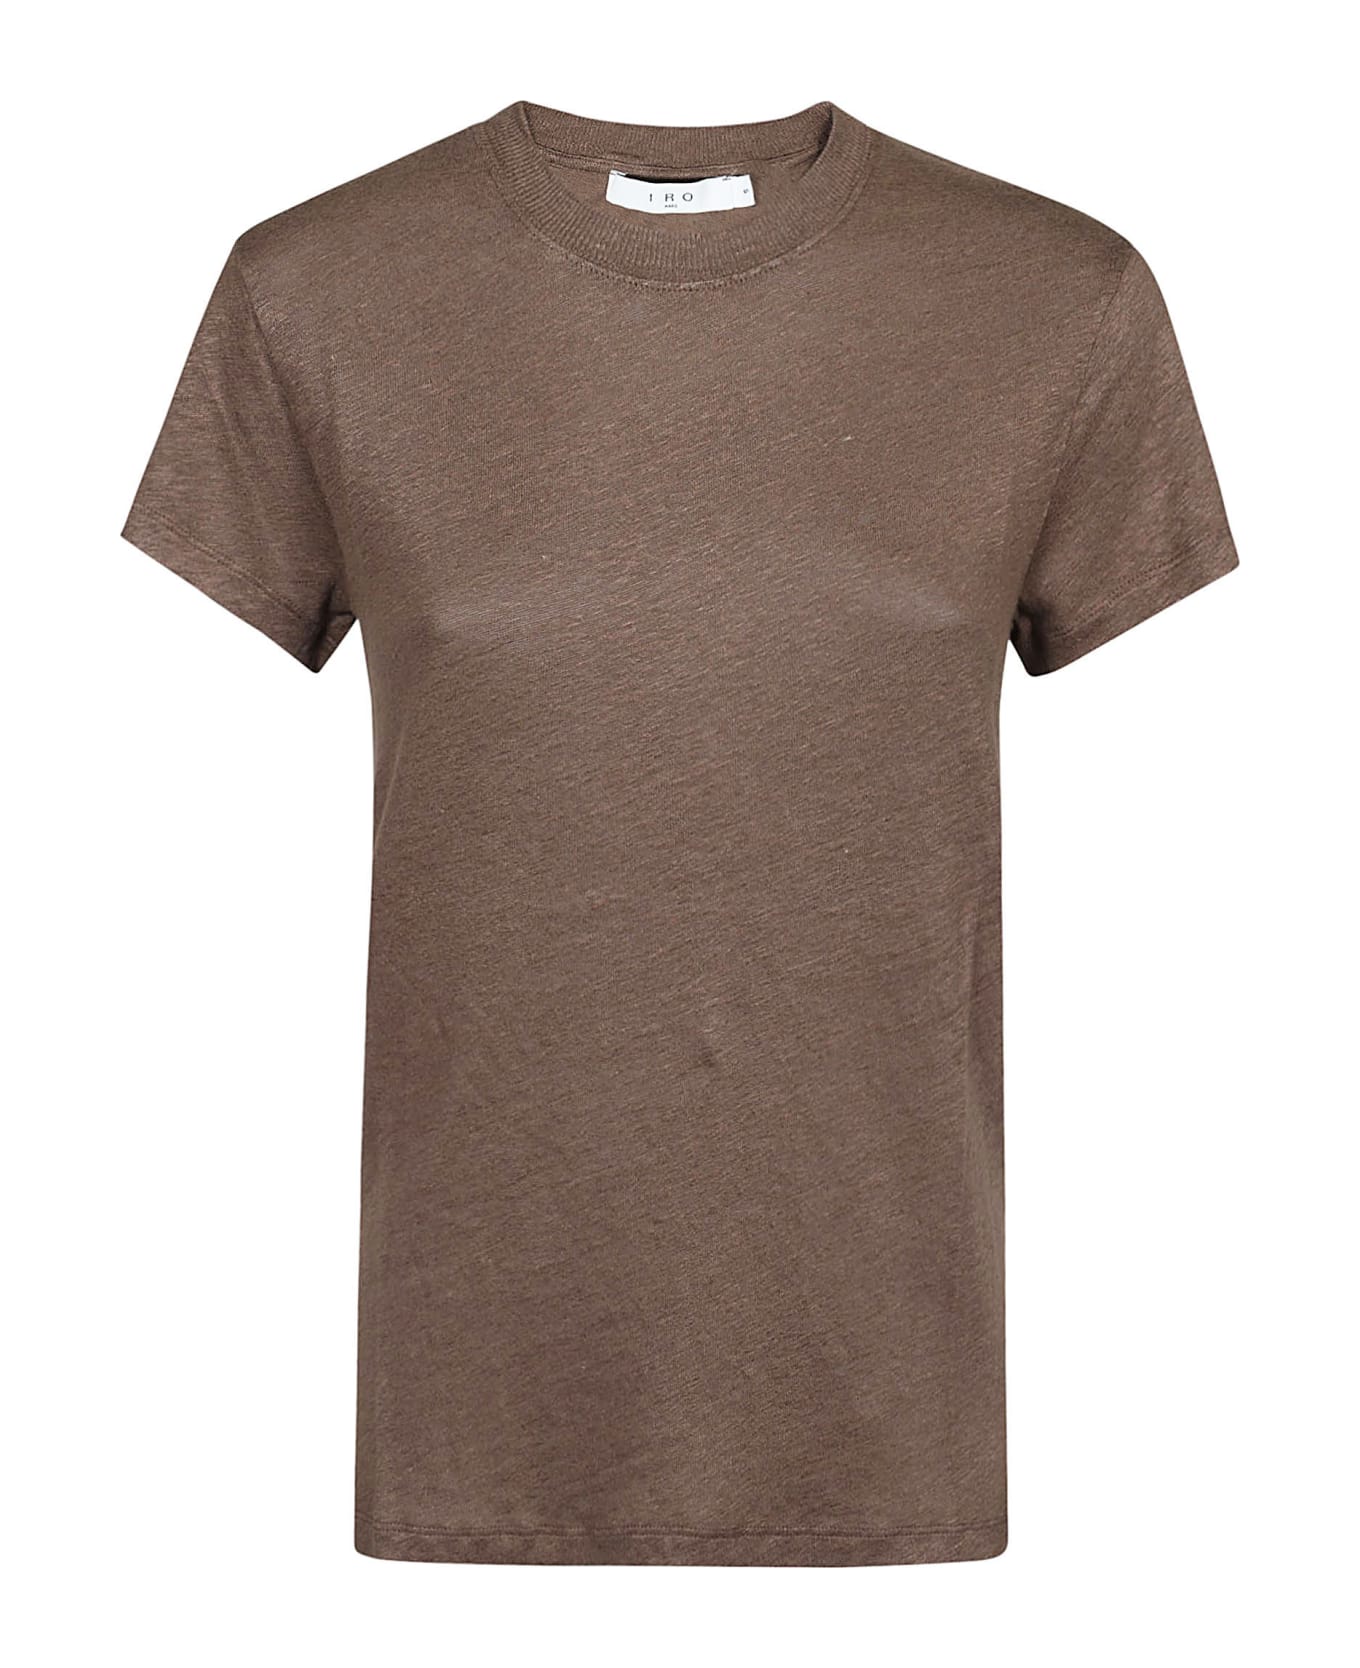 IRO Third T-shirt - Brown Tシャツ